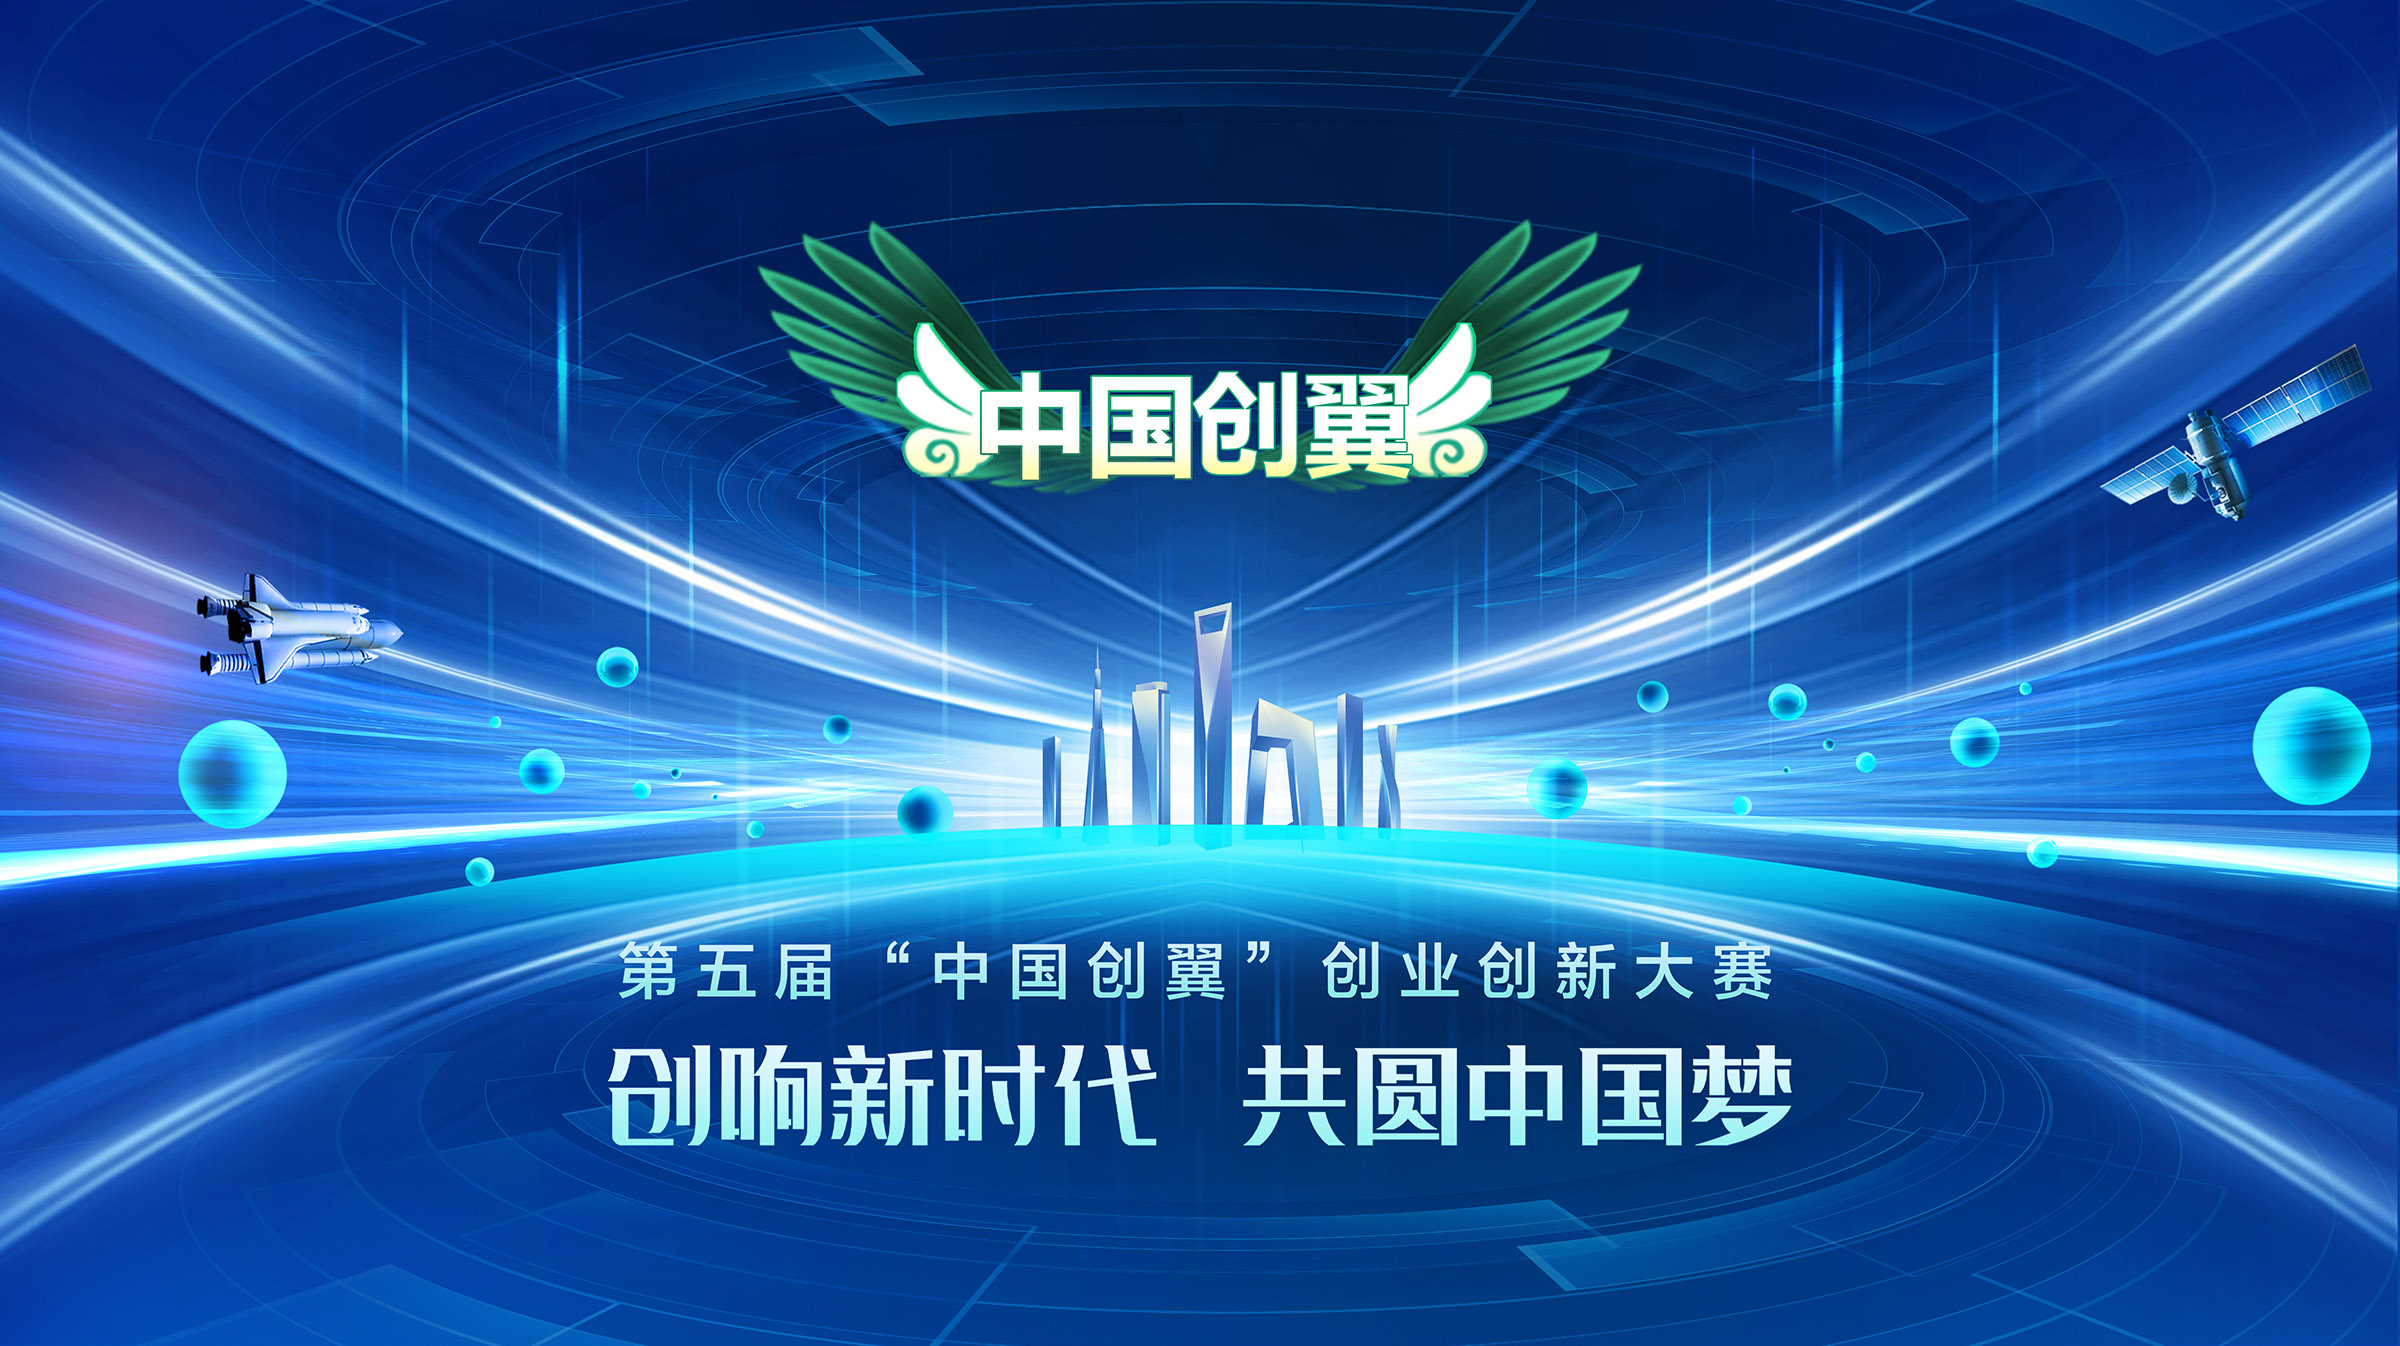 第五届“中国创翼”创业创新大赛河北省张家口市选拔赛正式启动